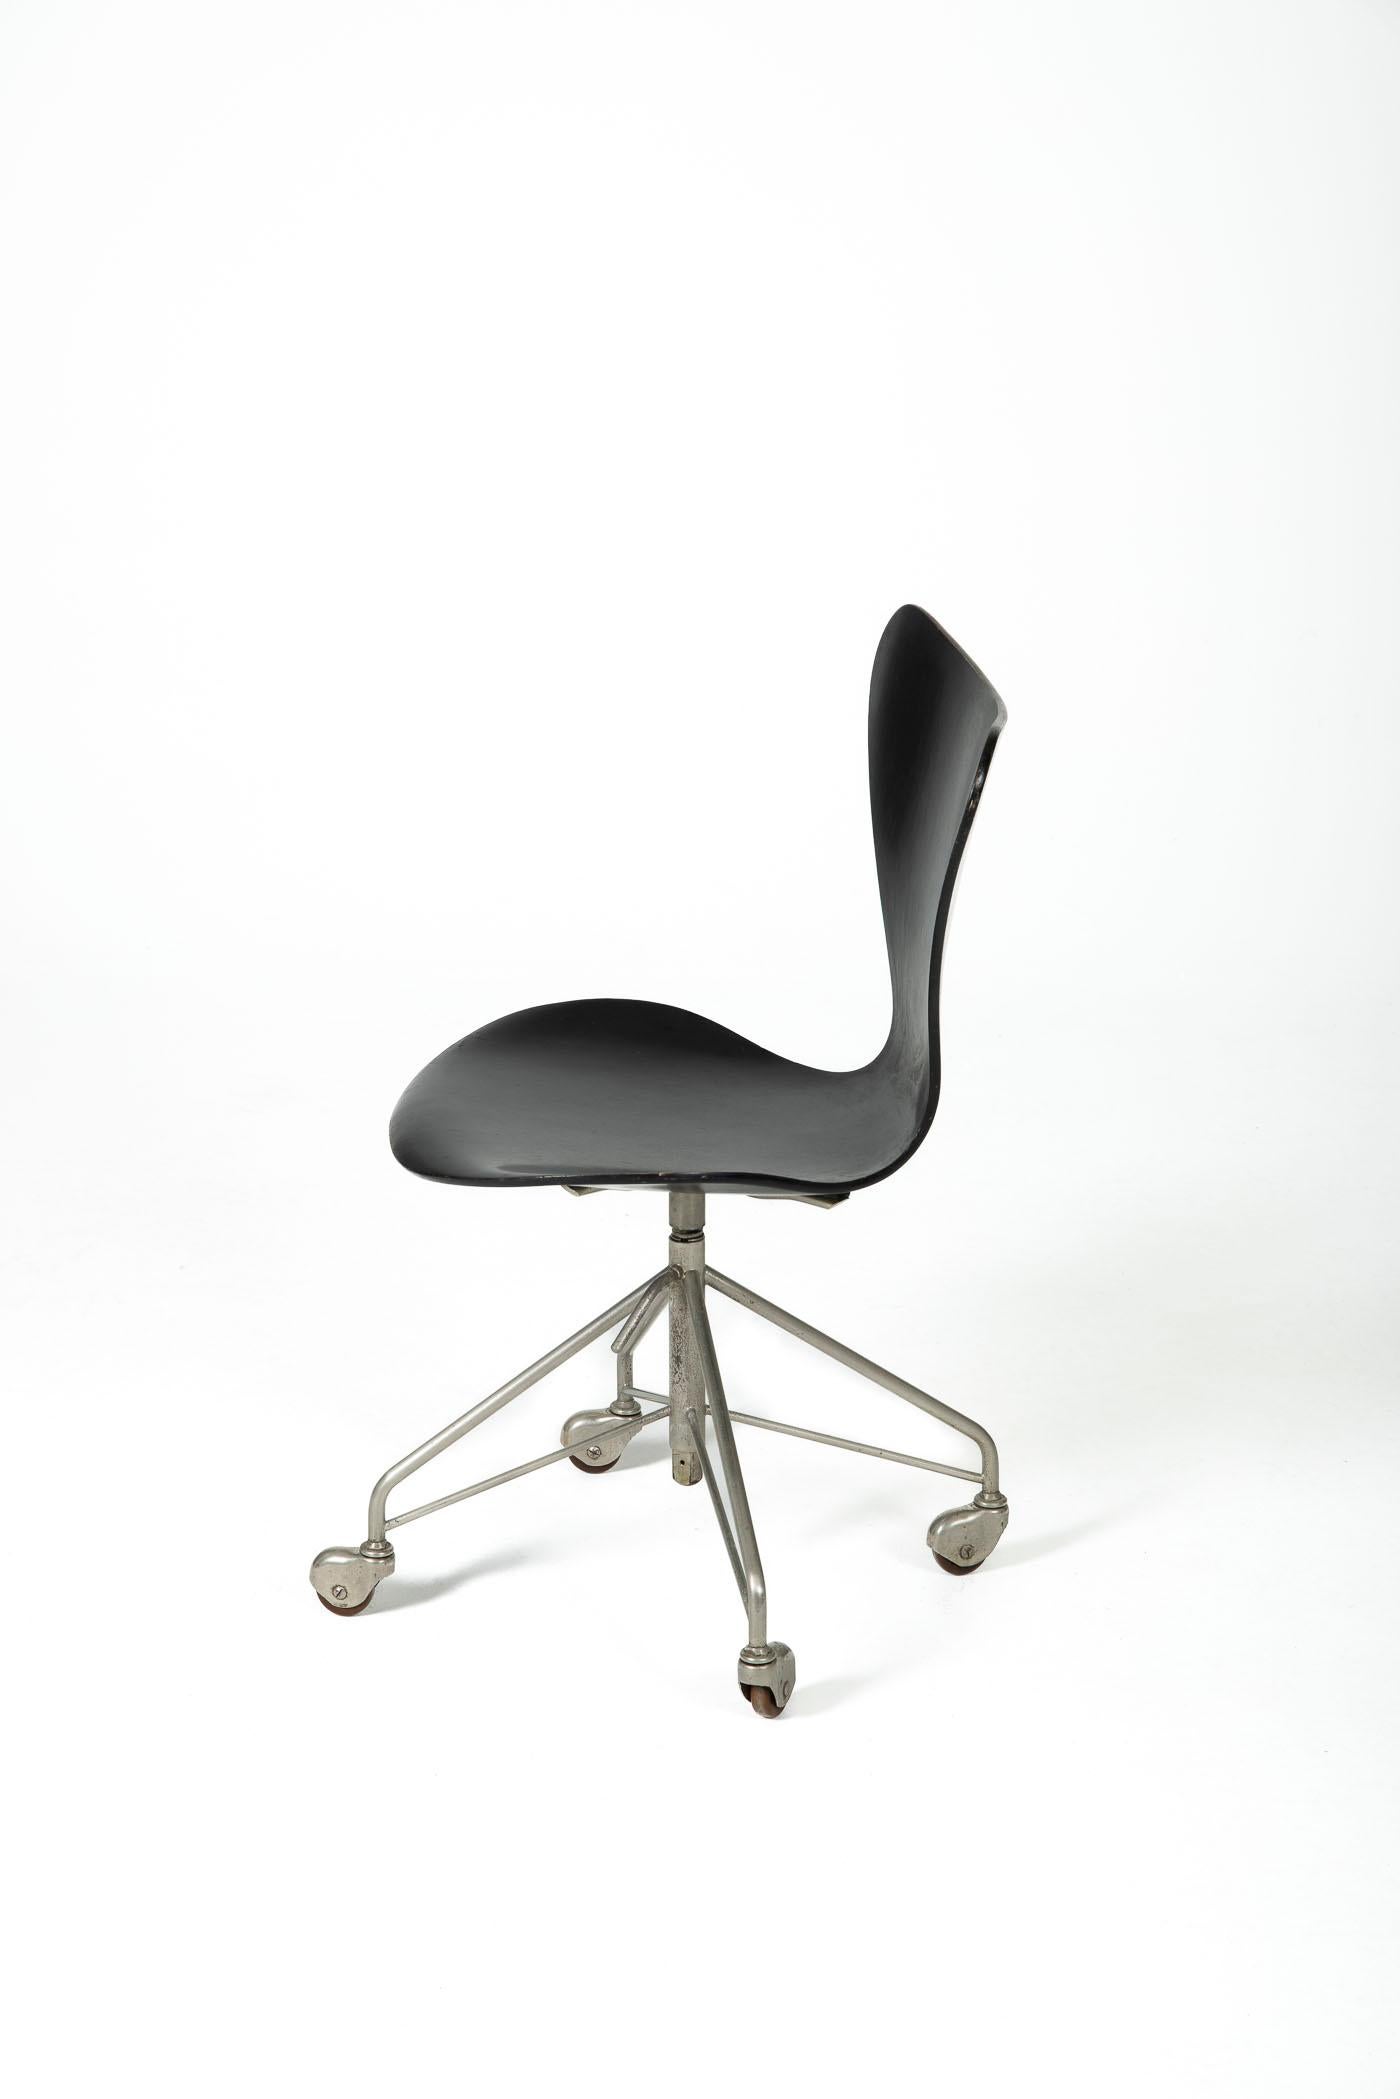 Mid-Century Modern Office Chair 3117 by Arne Jacobsen for Fritz Hansen, Denmark, 1960s For Sale